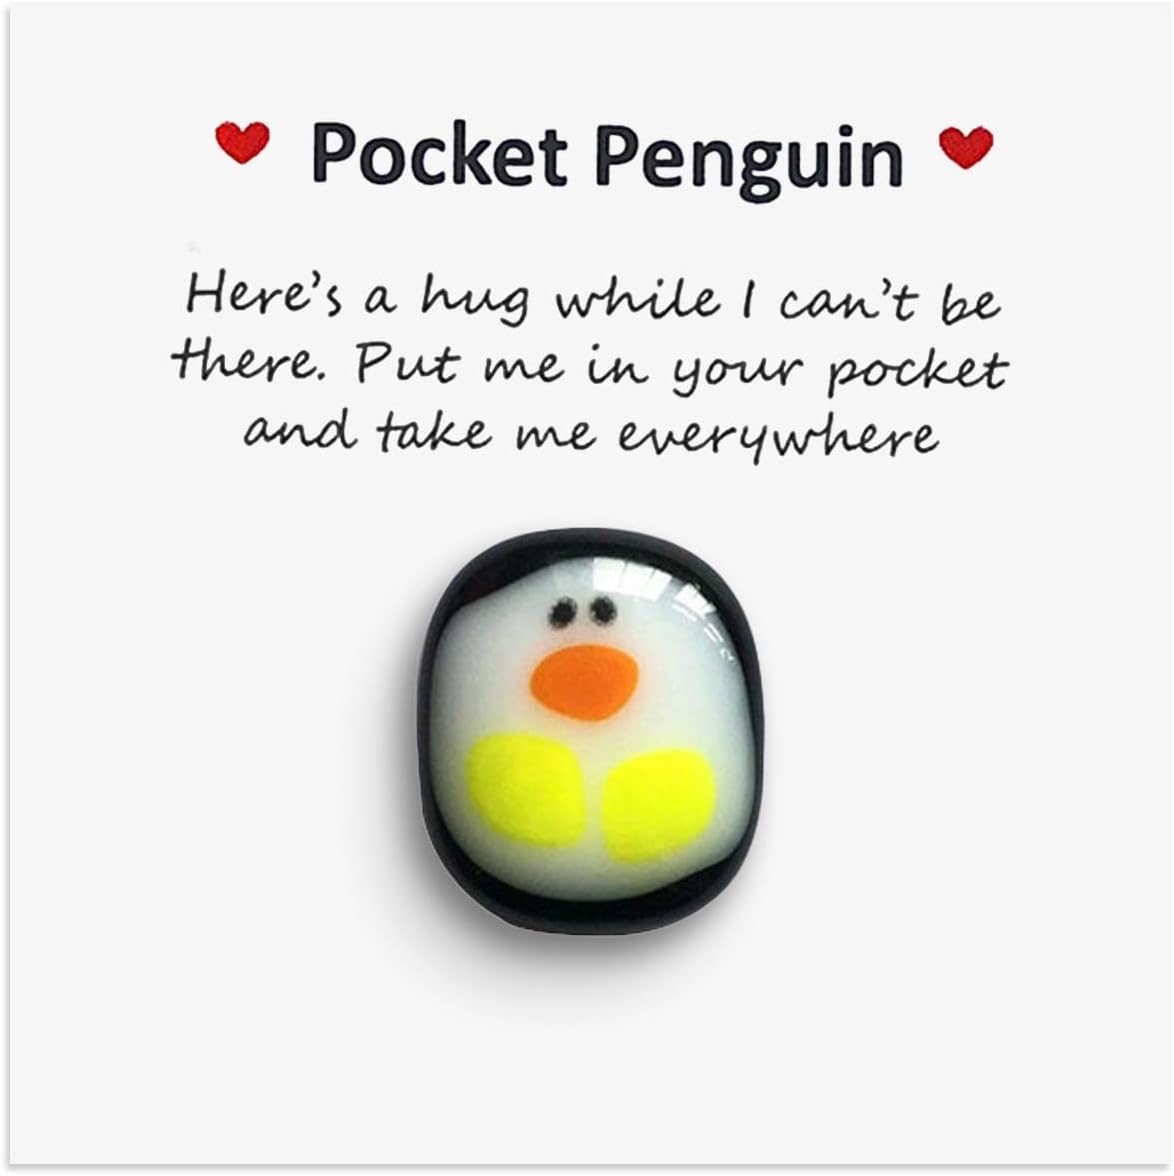 Pocket Penguin Secret Santa ideas under £5